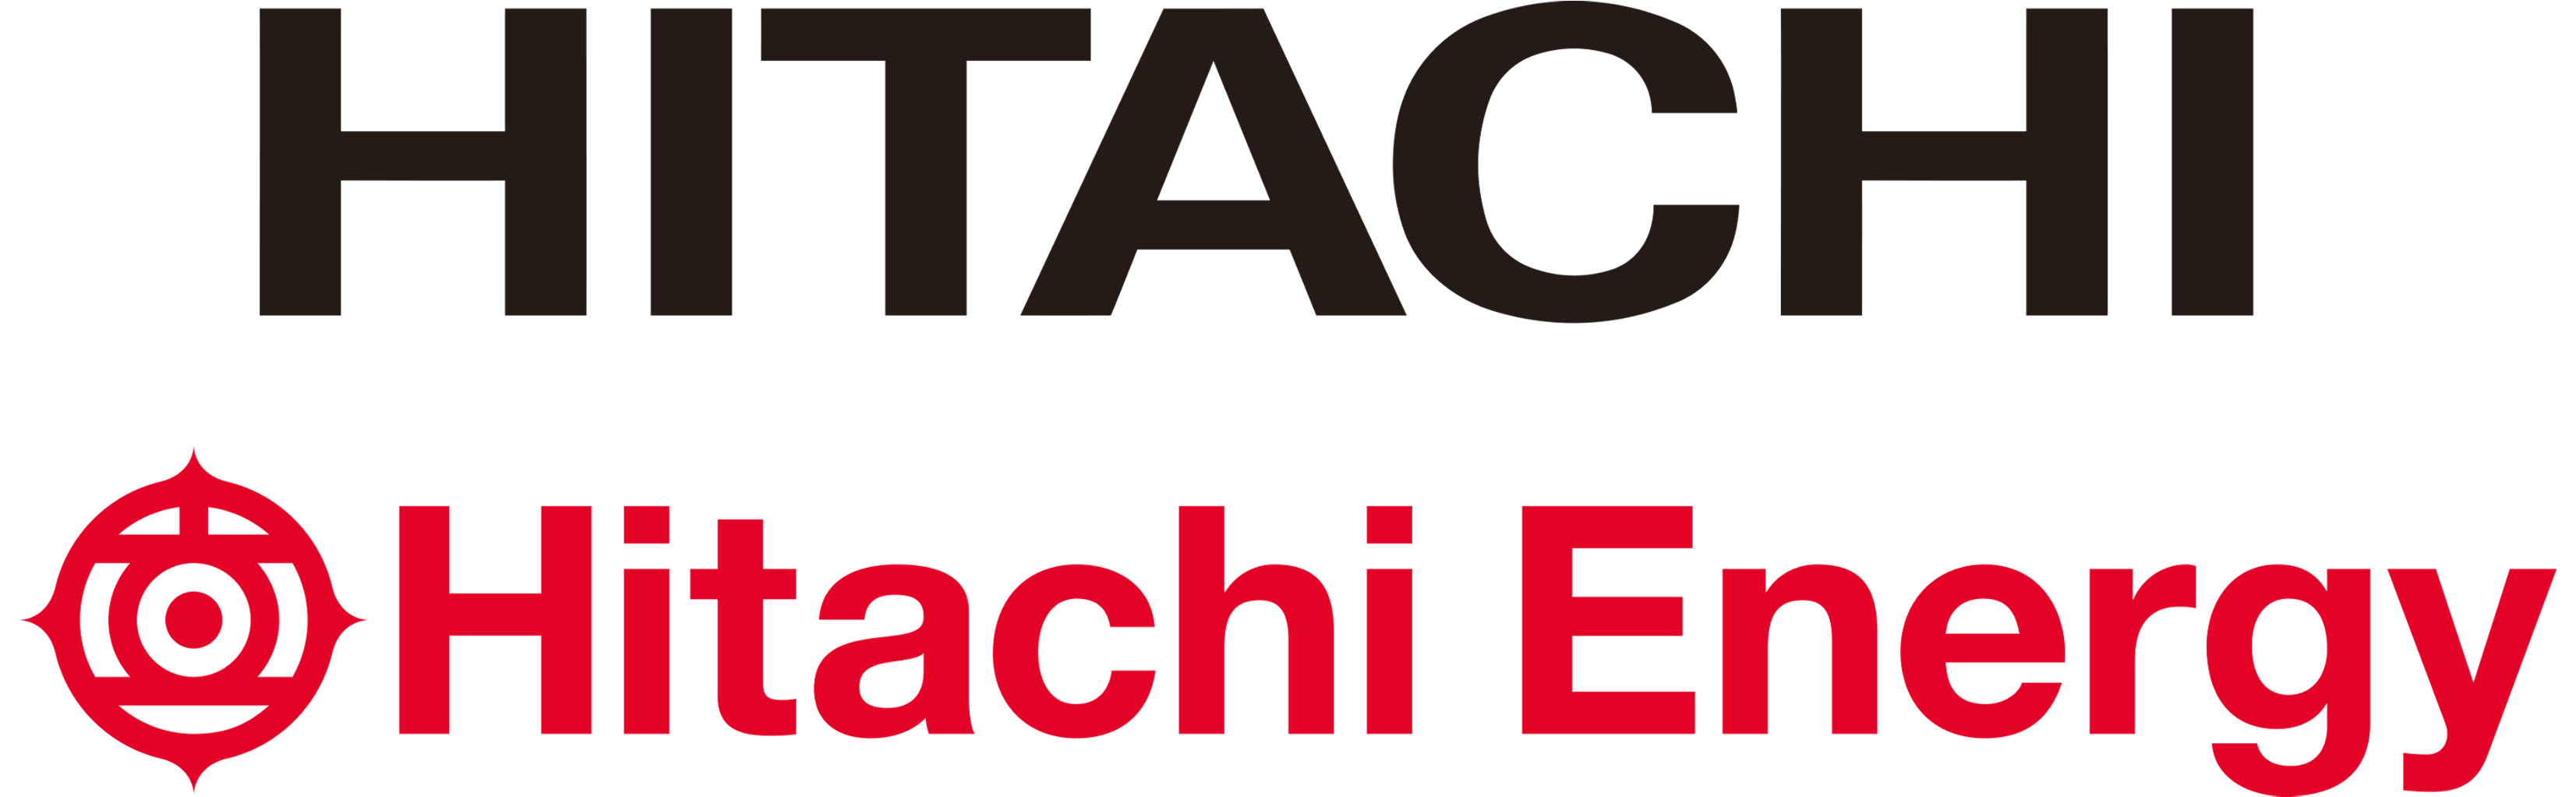 Hitachi_Hitachi Energy combined standard_CMYK